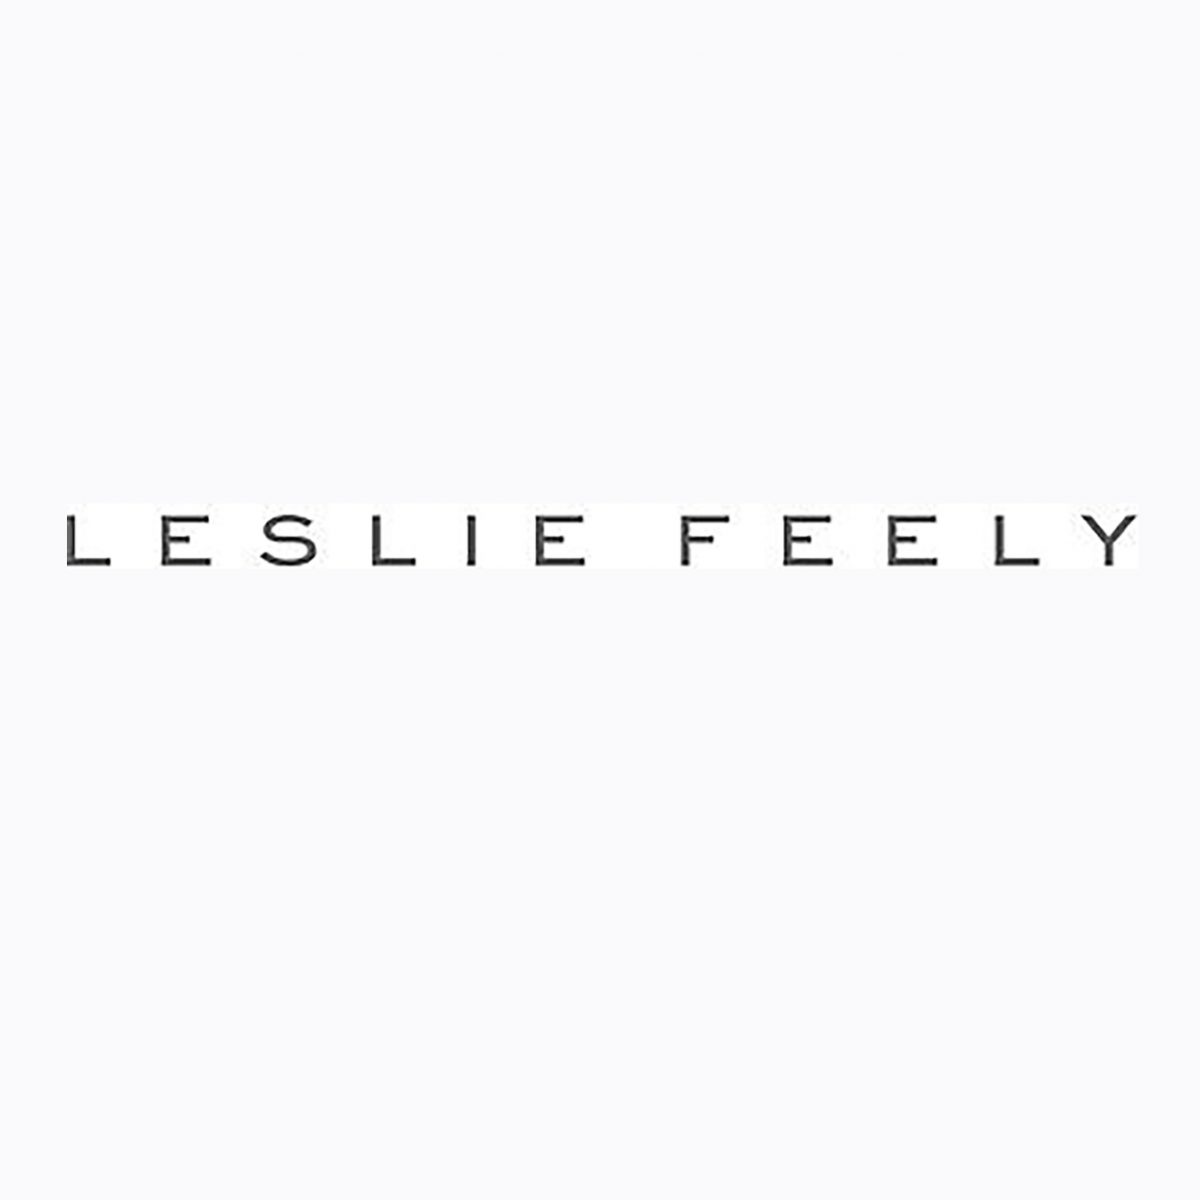 LESLIE FEELY